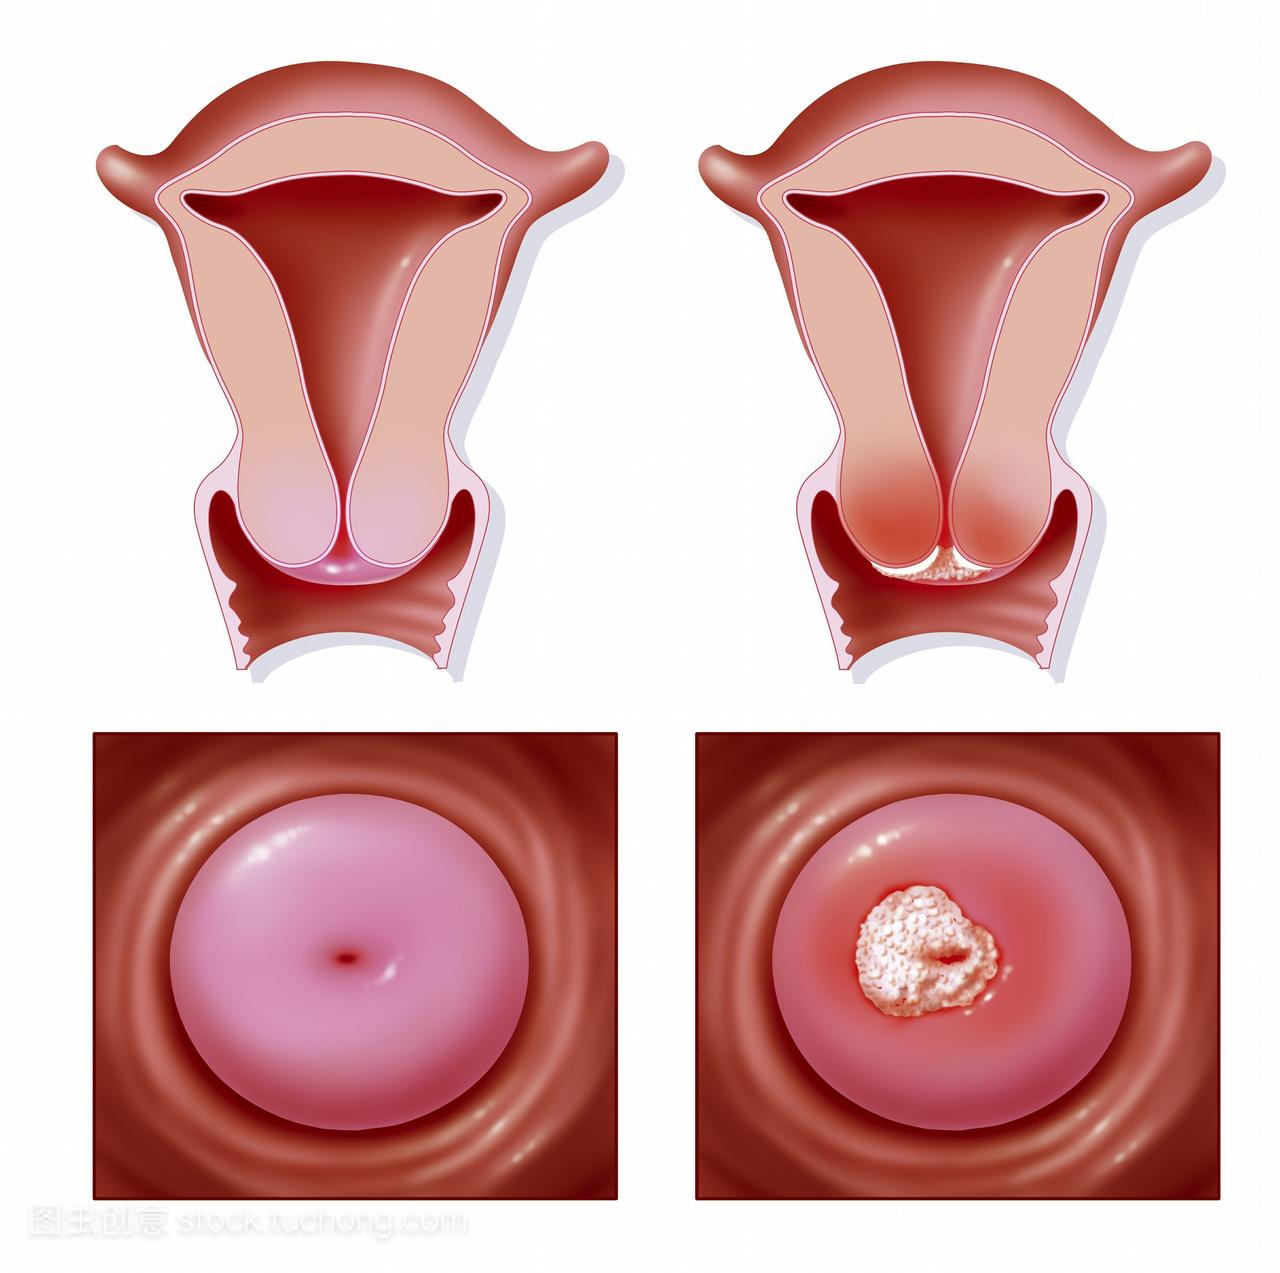 的例子宫颈癌。左边是健康子宫的前额部分顶部